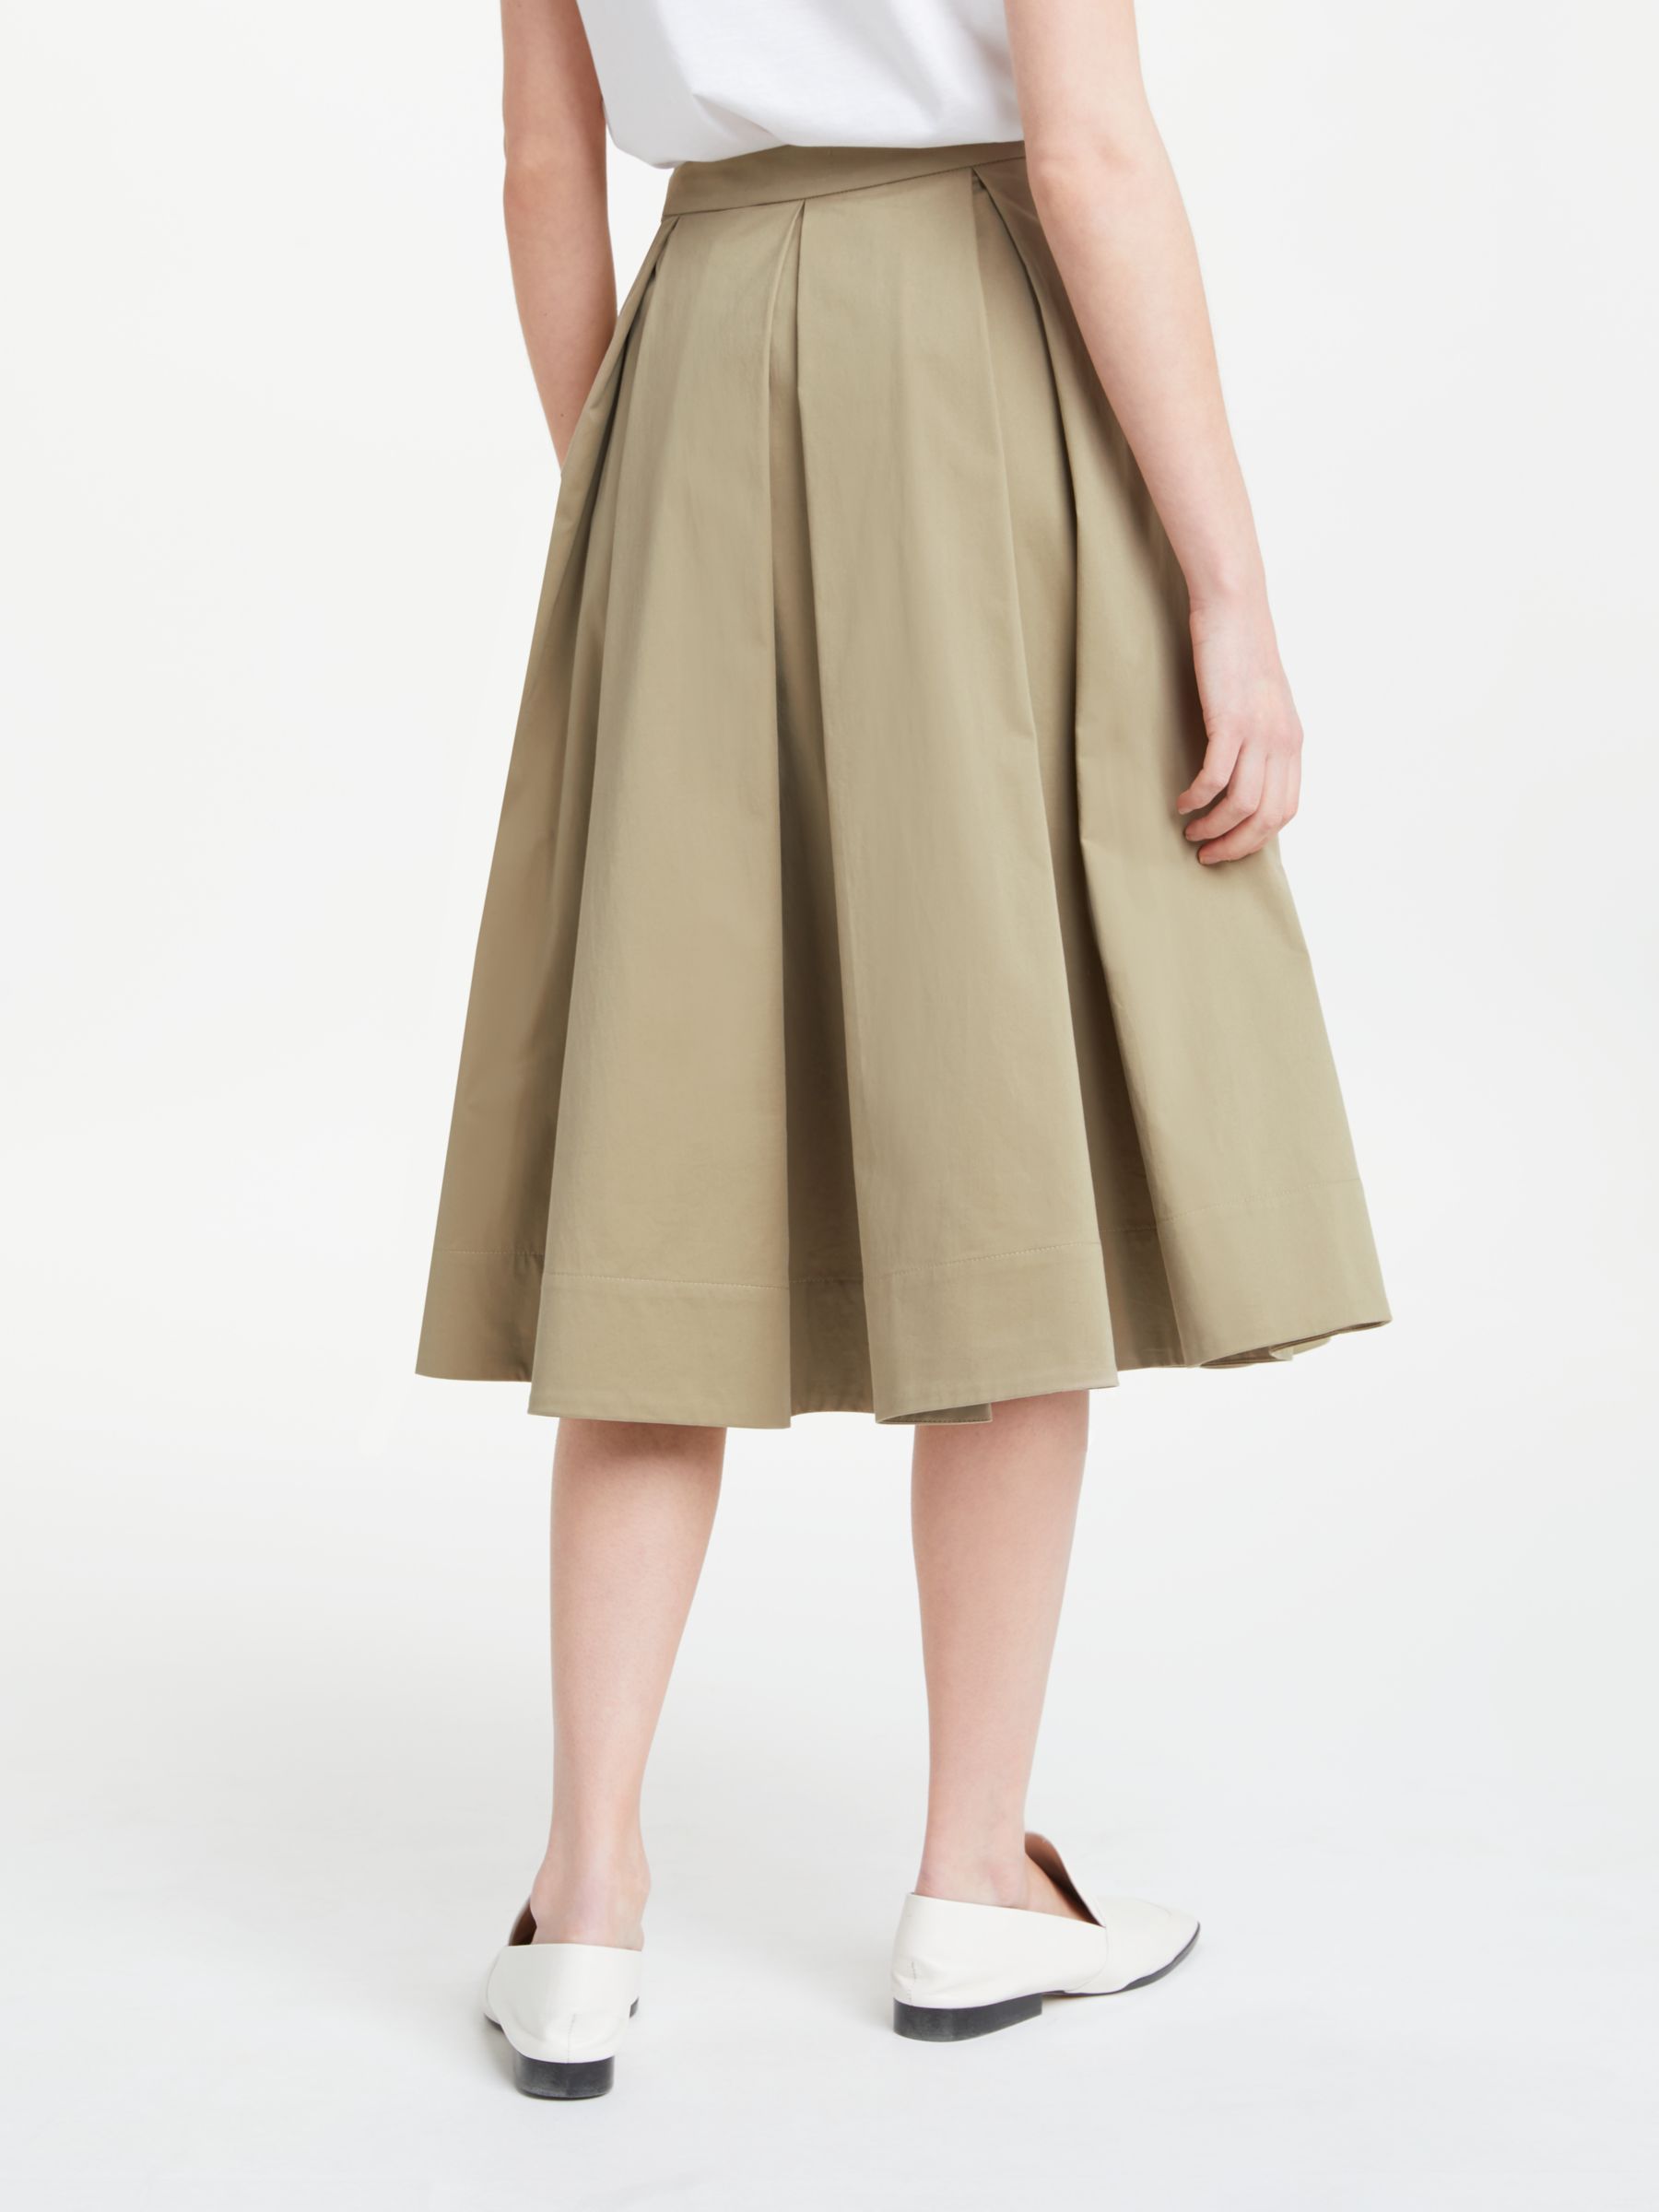 Finery Nicola Pleated Skirt